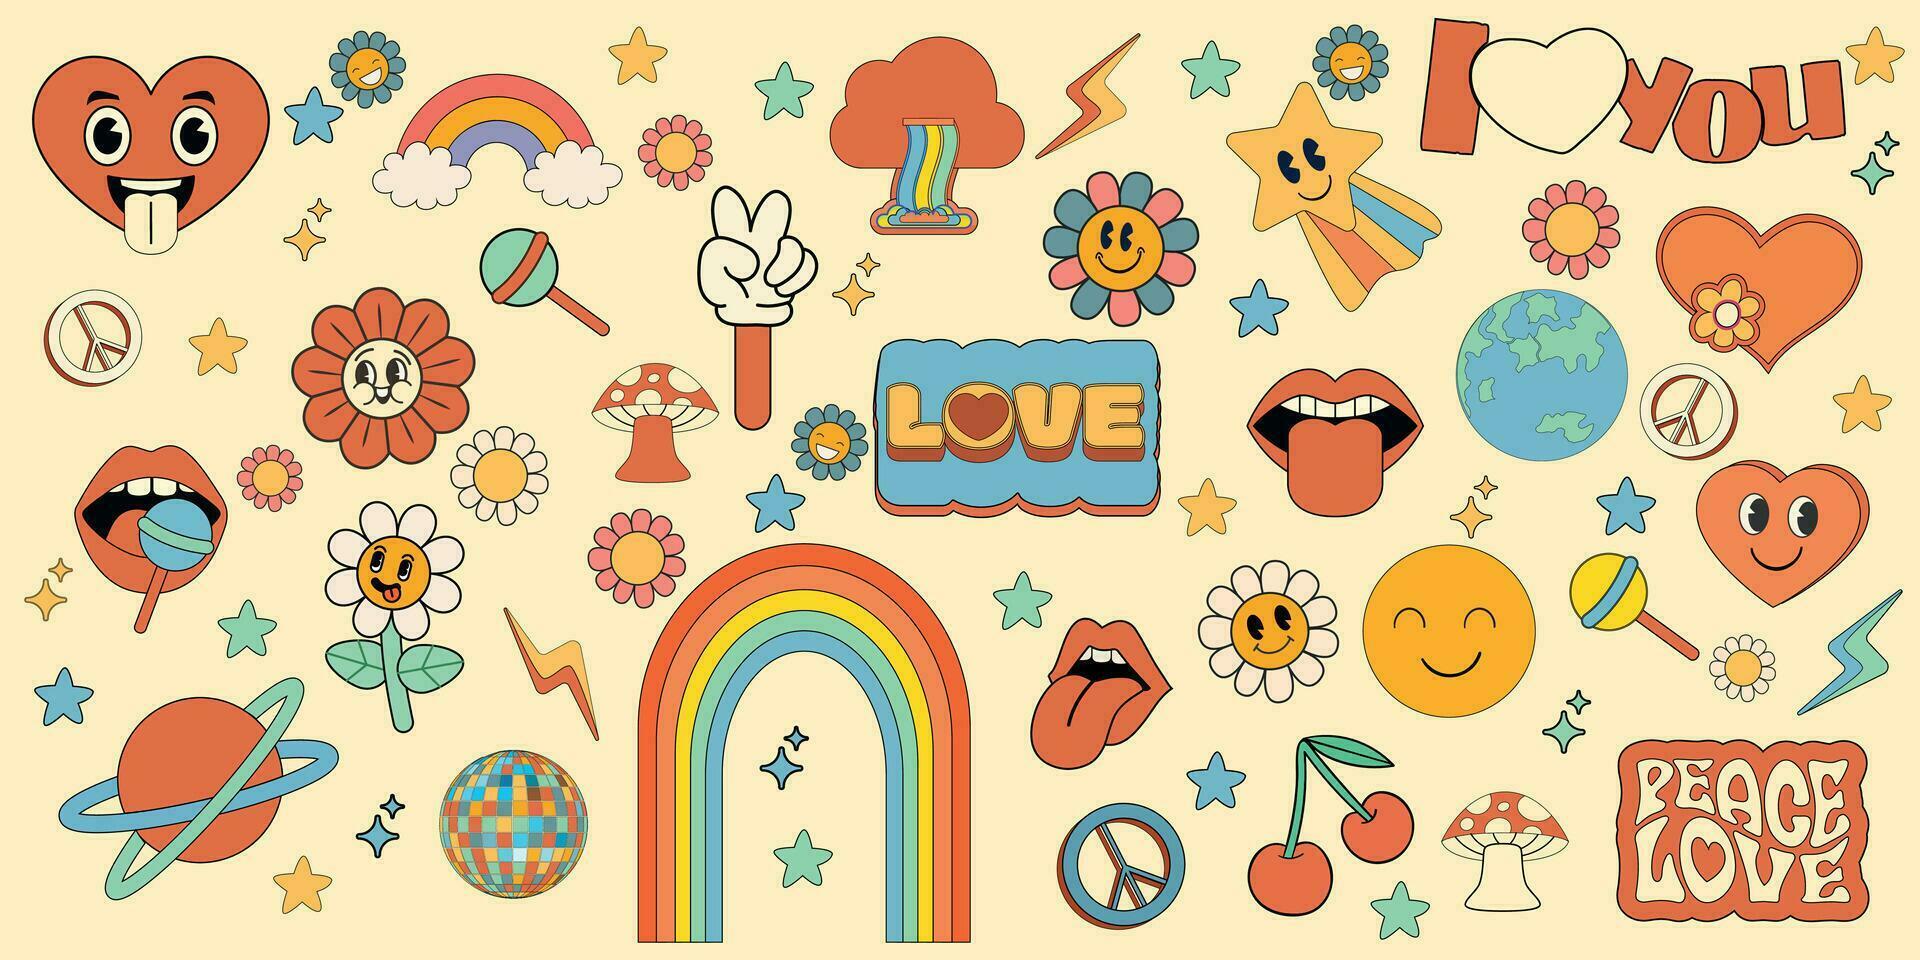 häftig hippie 70s uppsättning. rolig tecknad serie blomma, regnbåge, fred, kärlek, hjärta, tusensköna, svamp etc. klistermärke packa i trendig retro psychedelic tecknad serie stil. isolerat vektor illustration. blomma kraft.